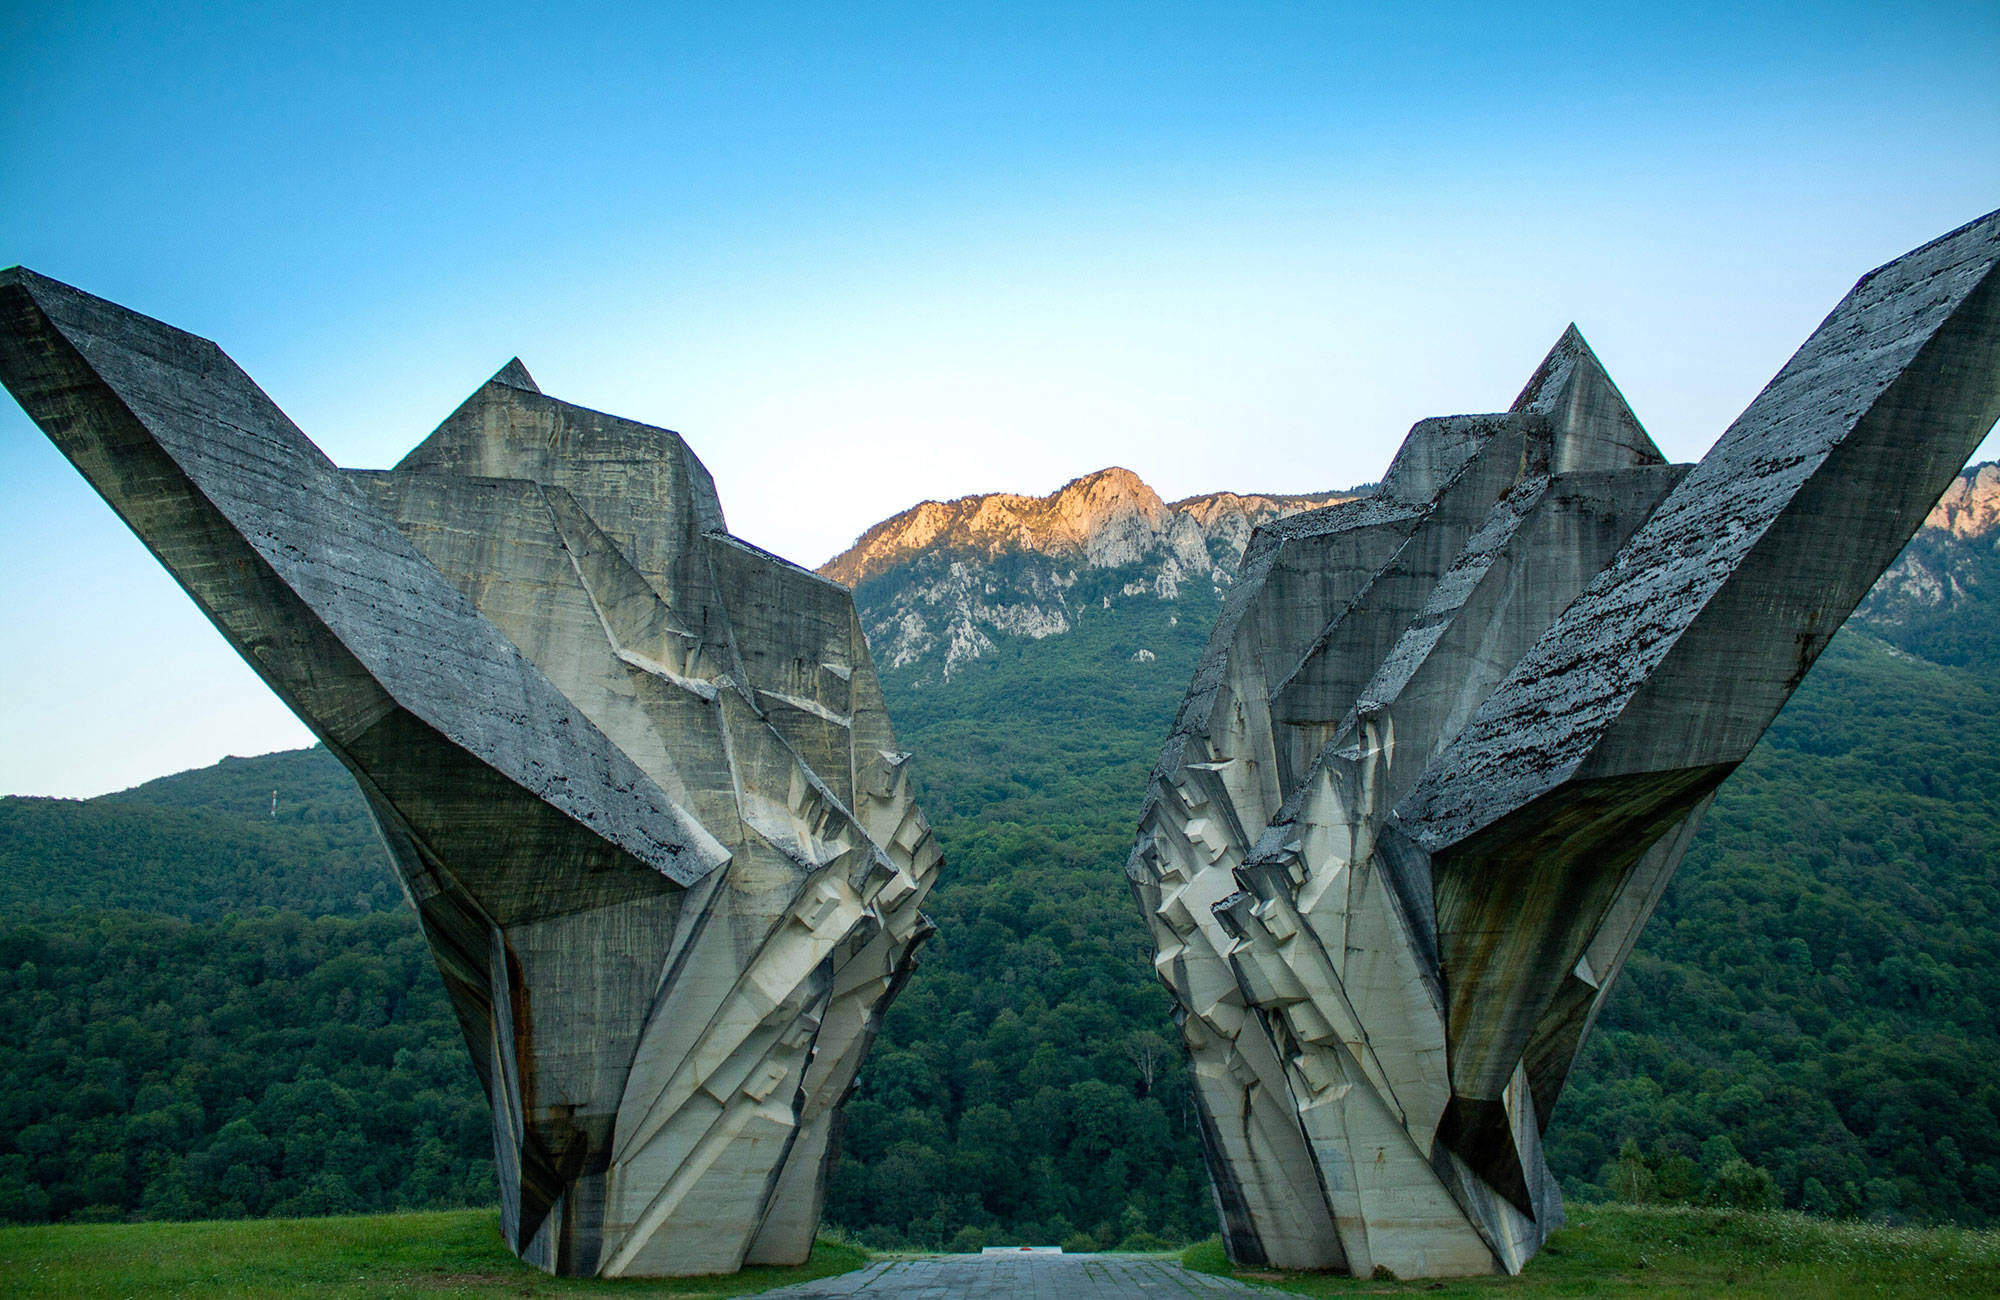 sutjeska memorial valley of heros måste besökas under en resa till Bosnien-Hercegovina